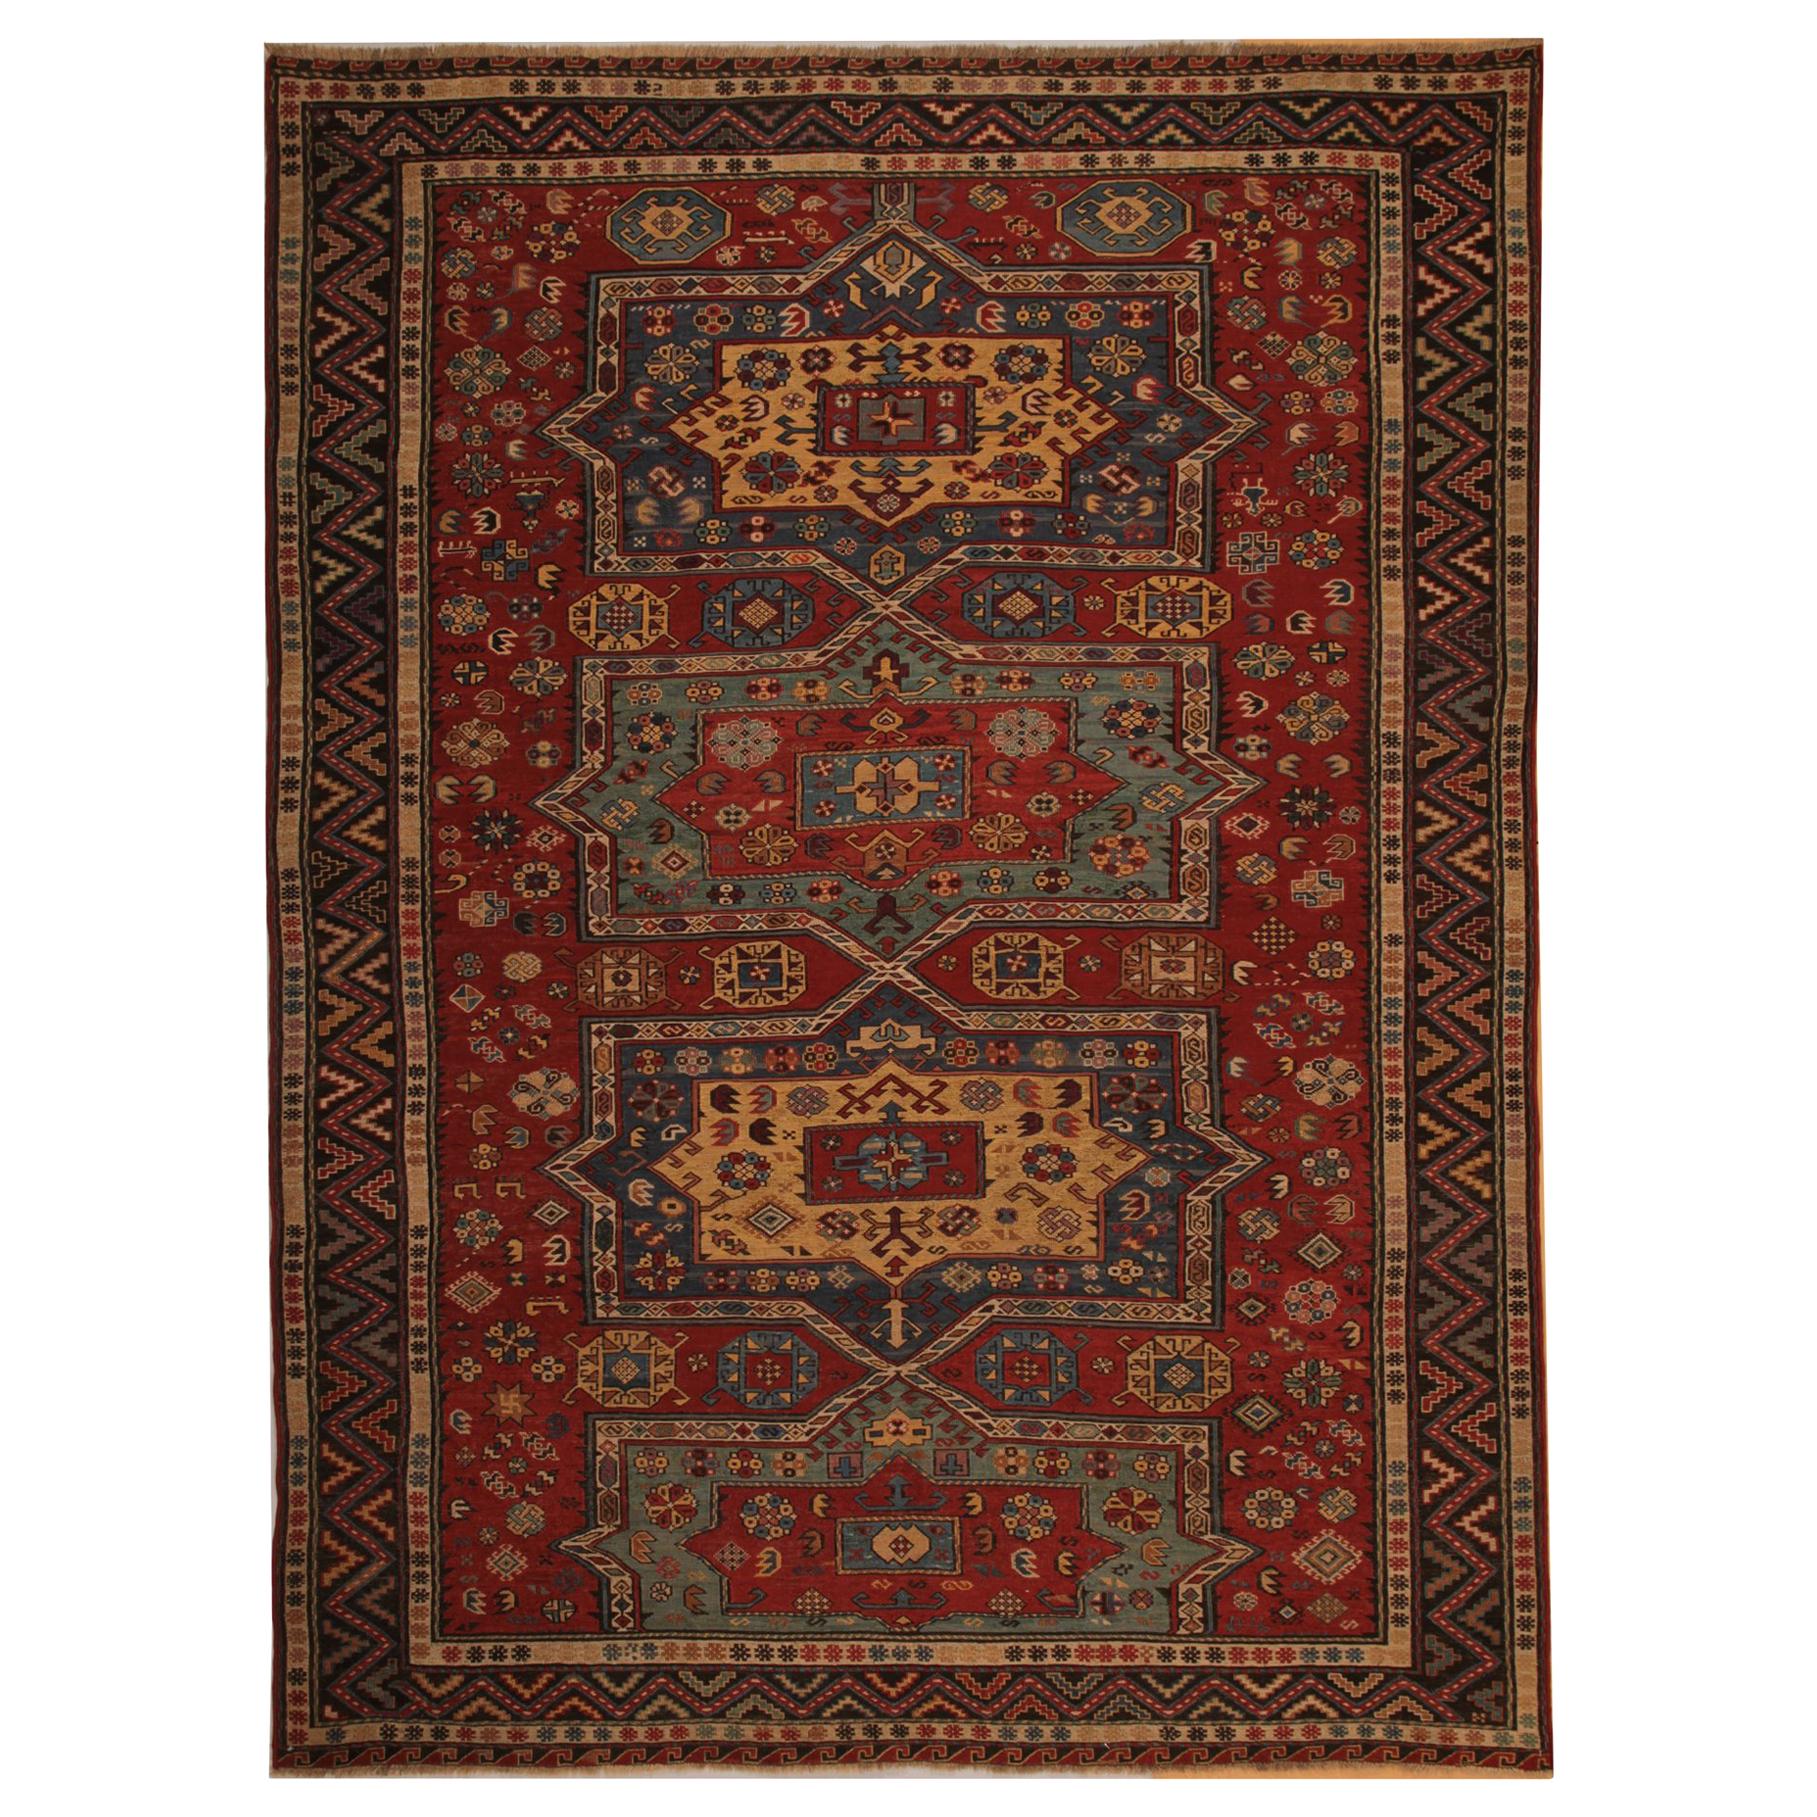 Tapis ancien du Caucase Sumakh Kilim, tapis oriental à tissage plat